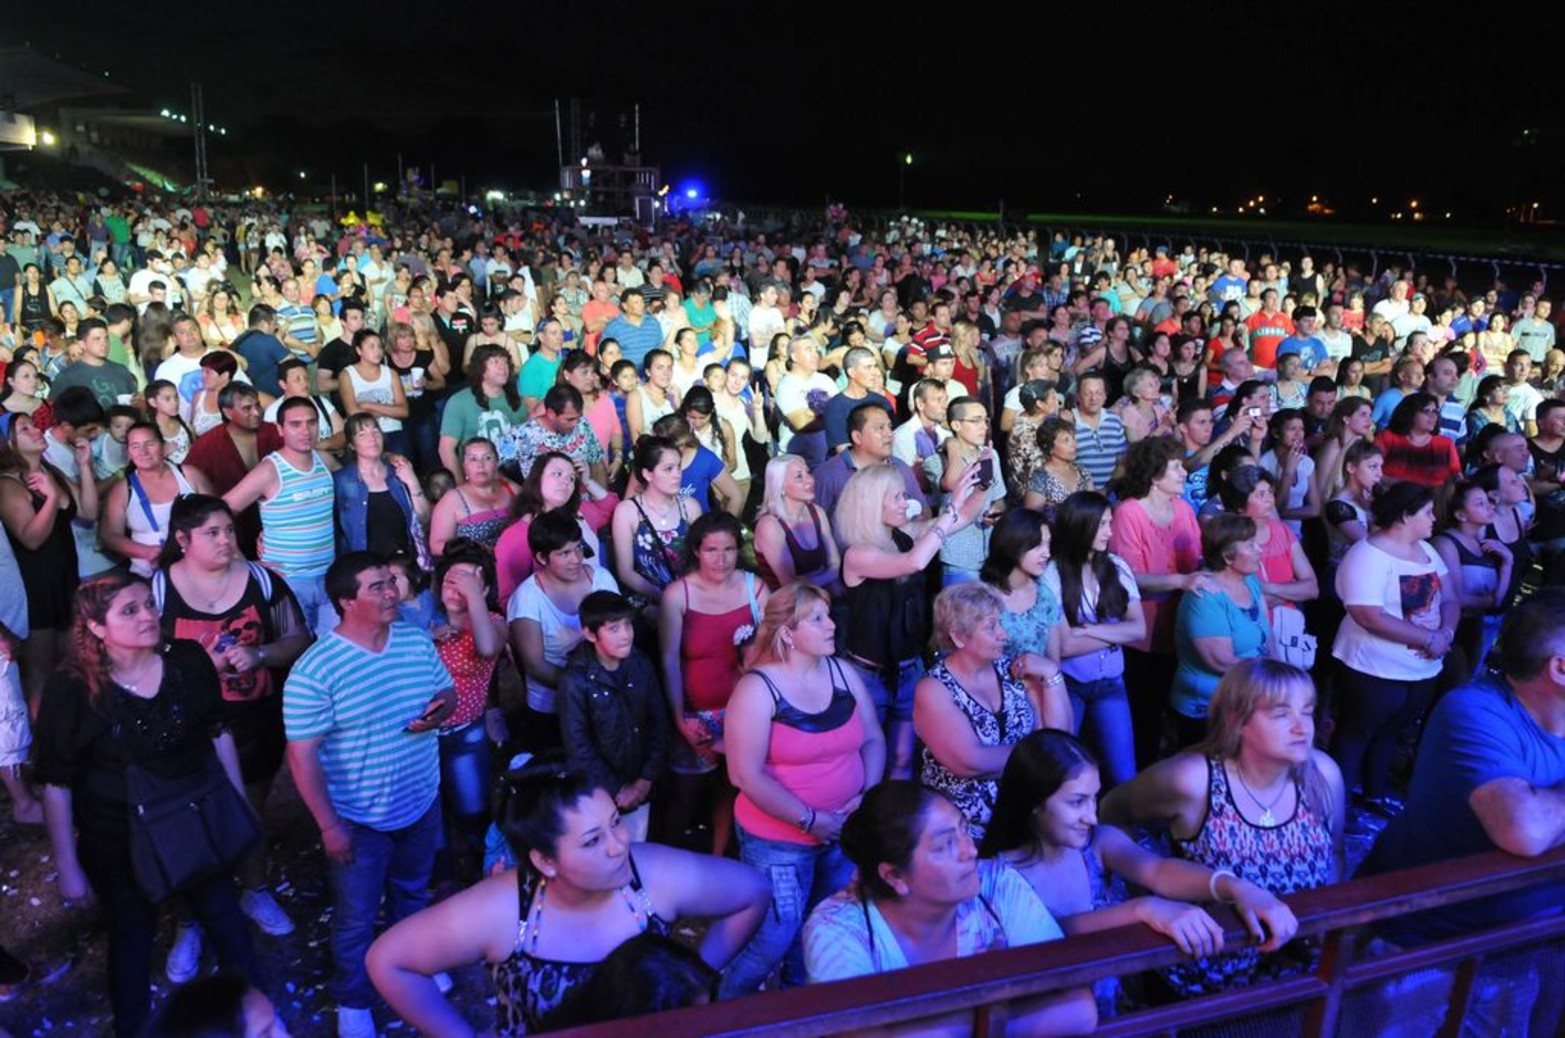 La primera edición de la Fiesta de la Cumbia concluía el domingo a la noche en el Hipódromo Las Flores